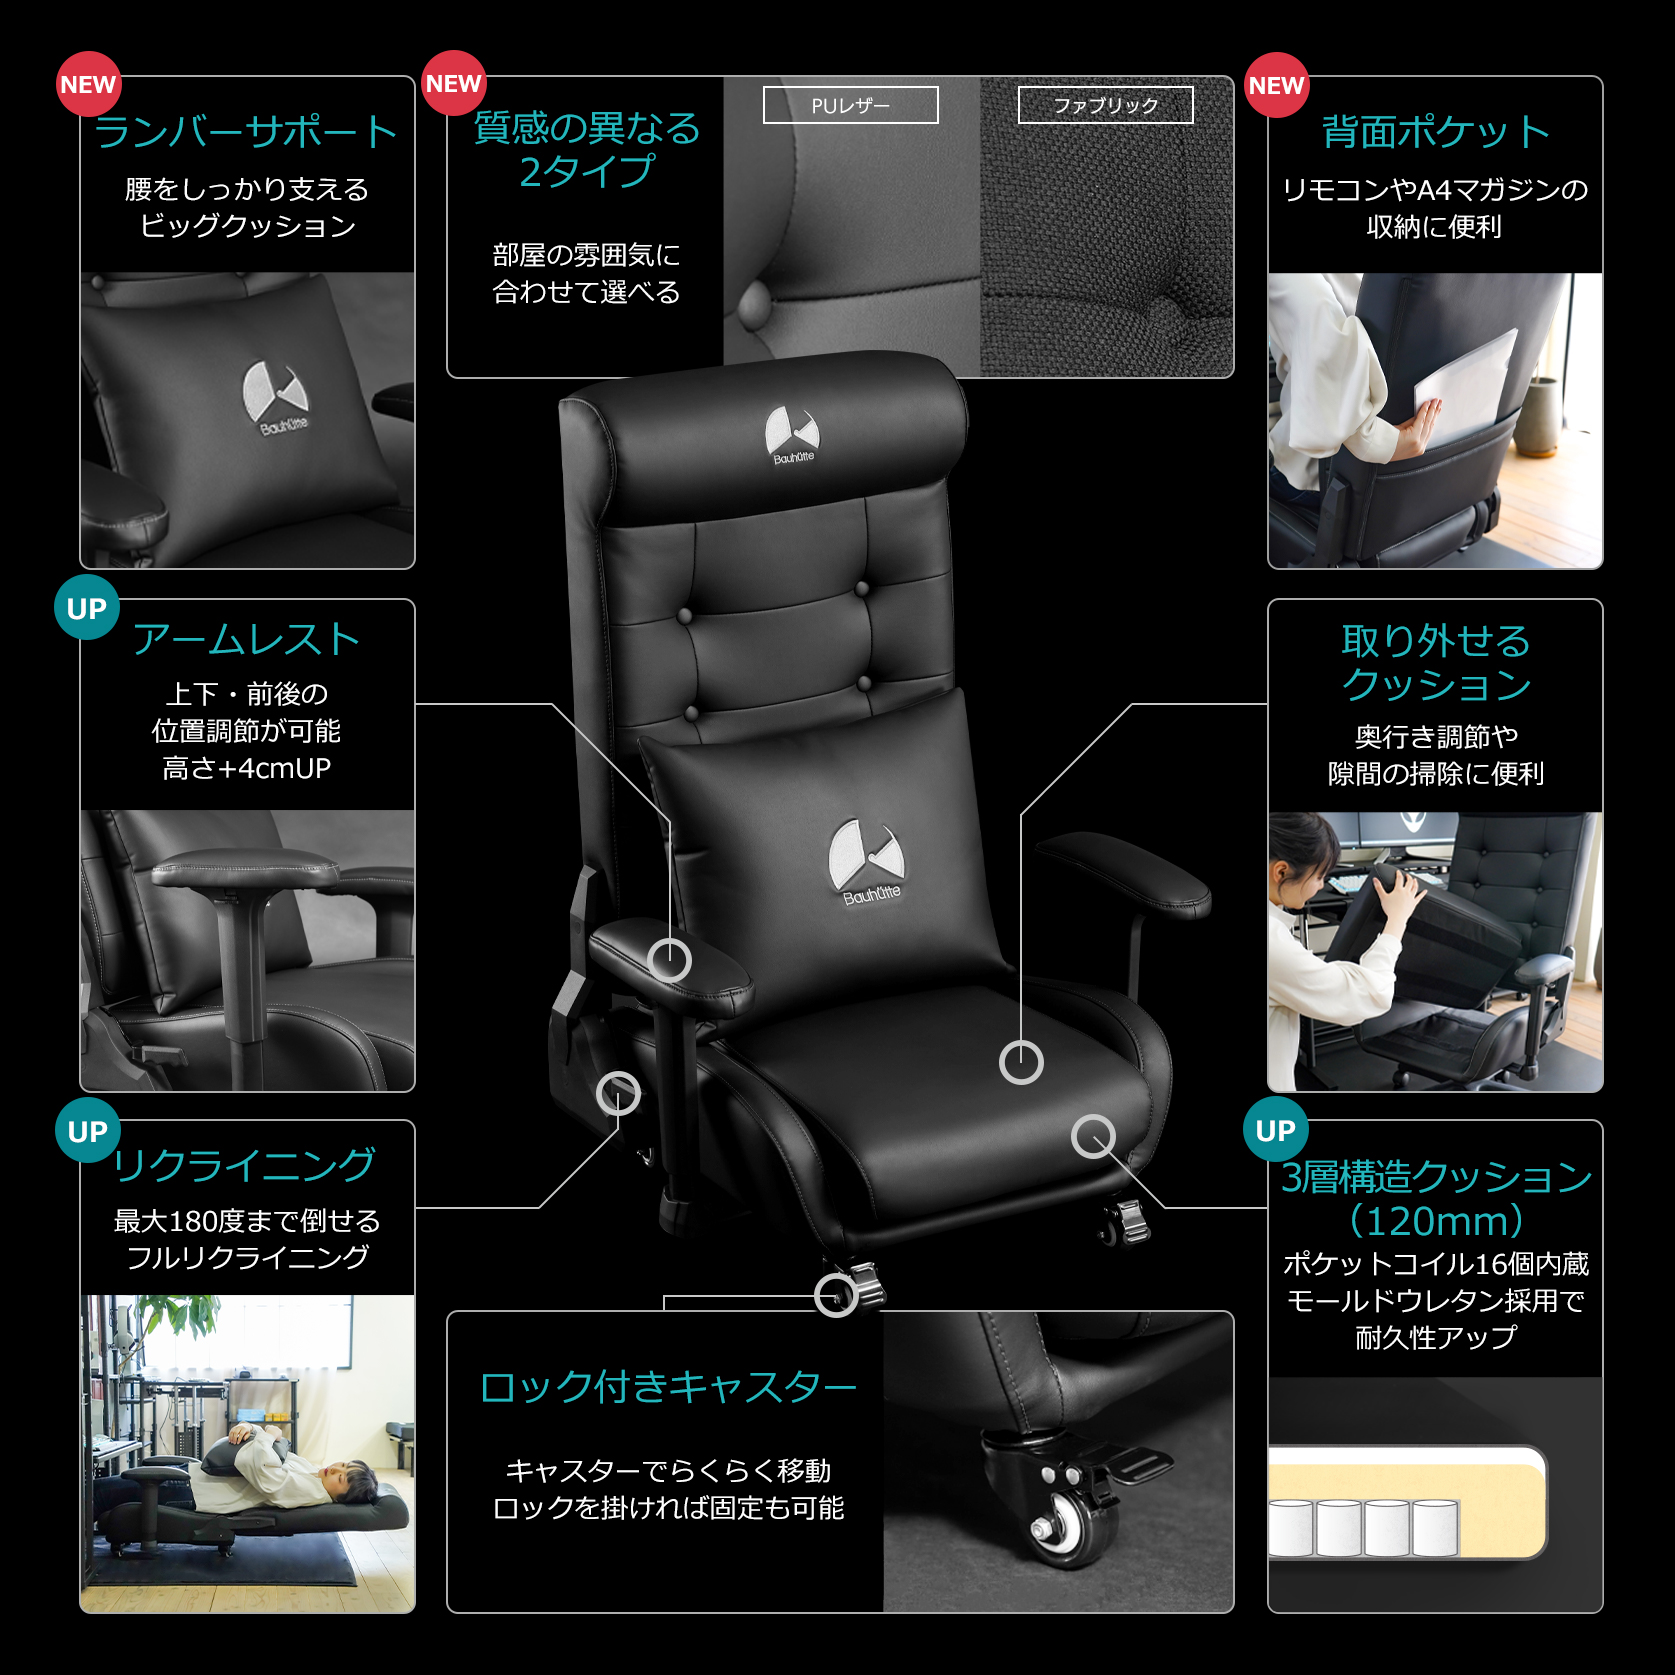 ゲーミングソファ座椅子2 GX-370/GX-370PU | Bauhütte®